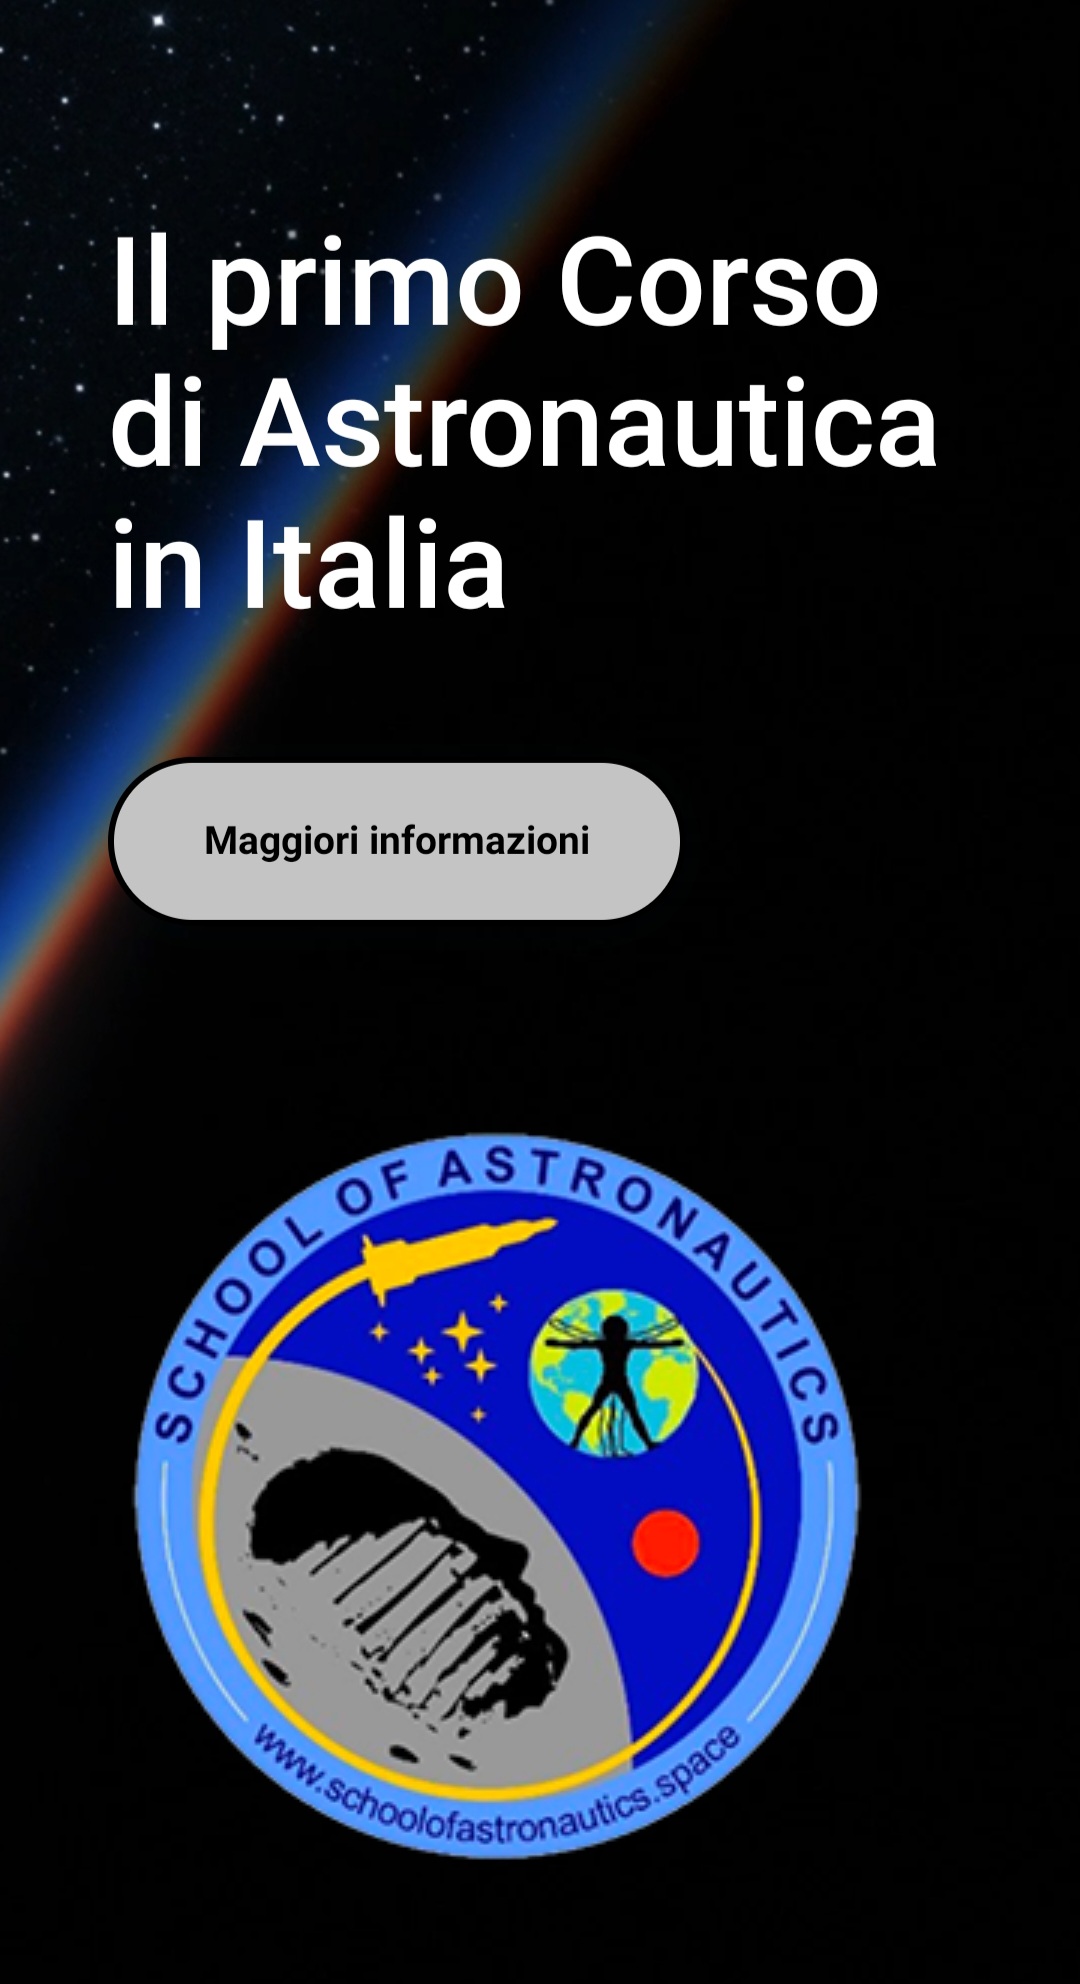 upload/IMMMAGINE Corso astronautica.jpg